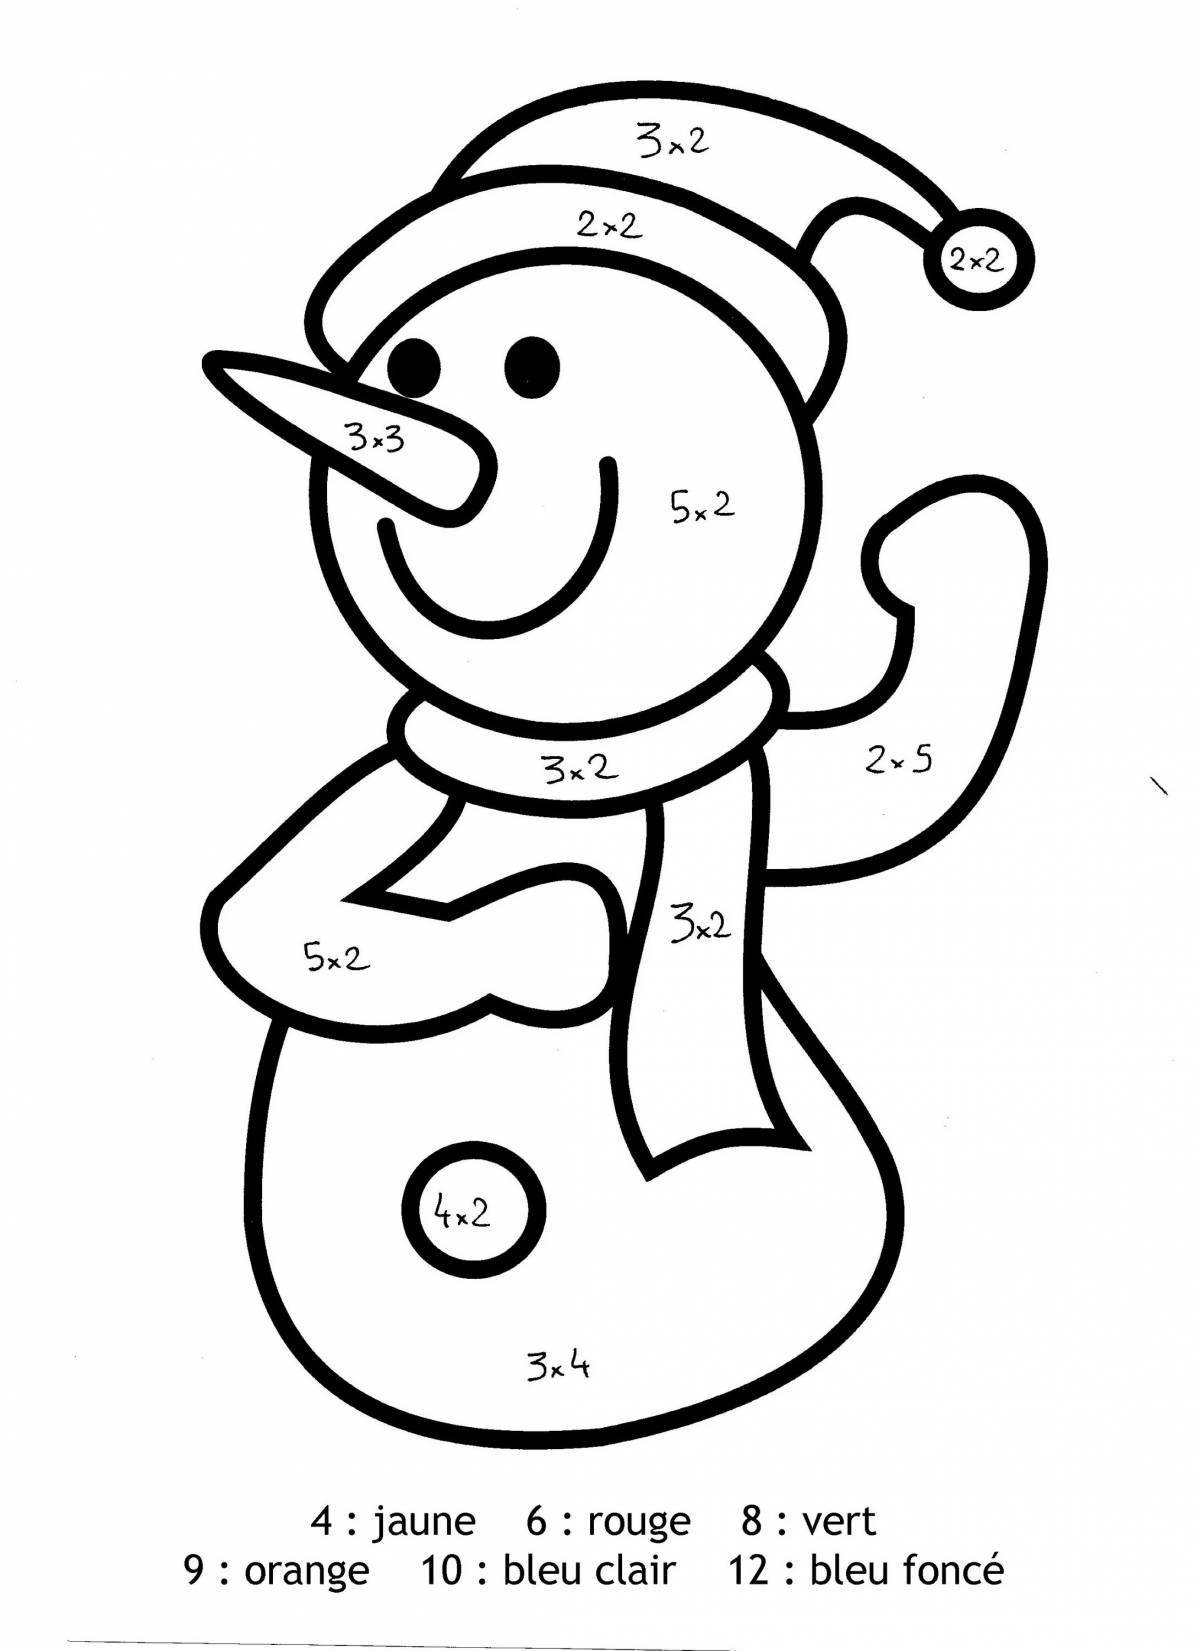 Гламурная раскраска снеговик по номерам